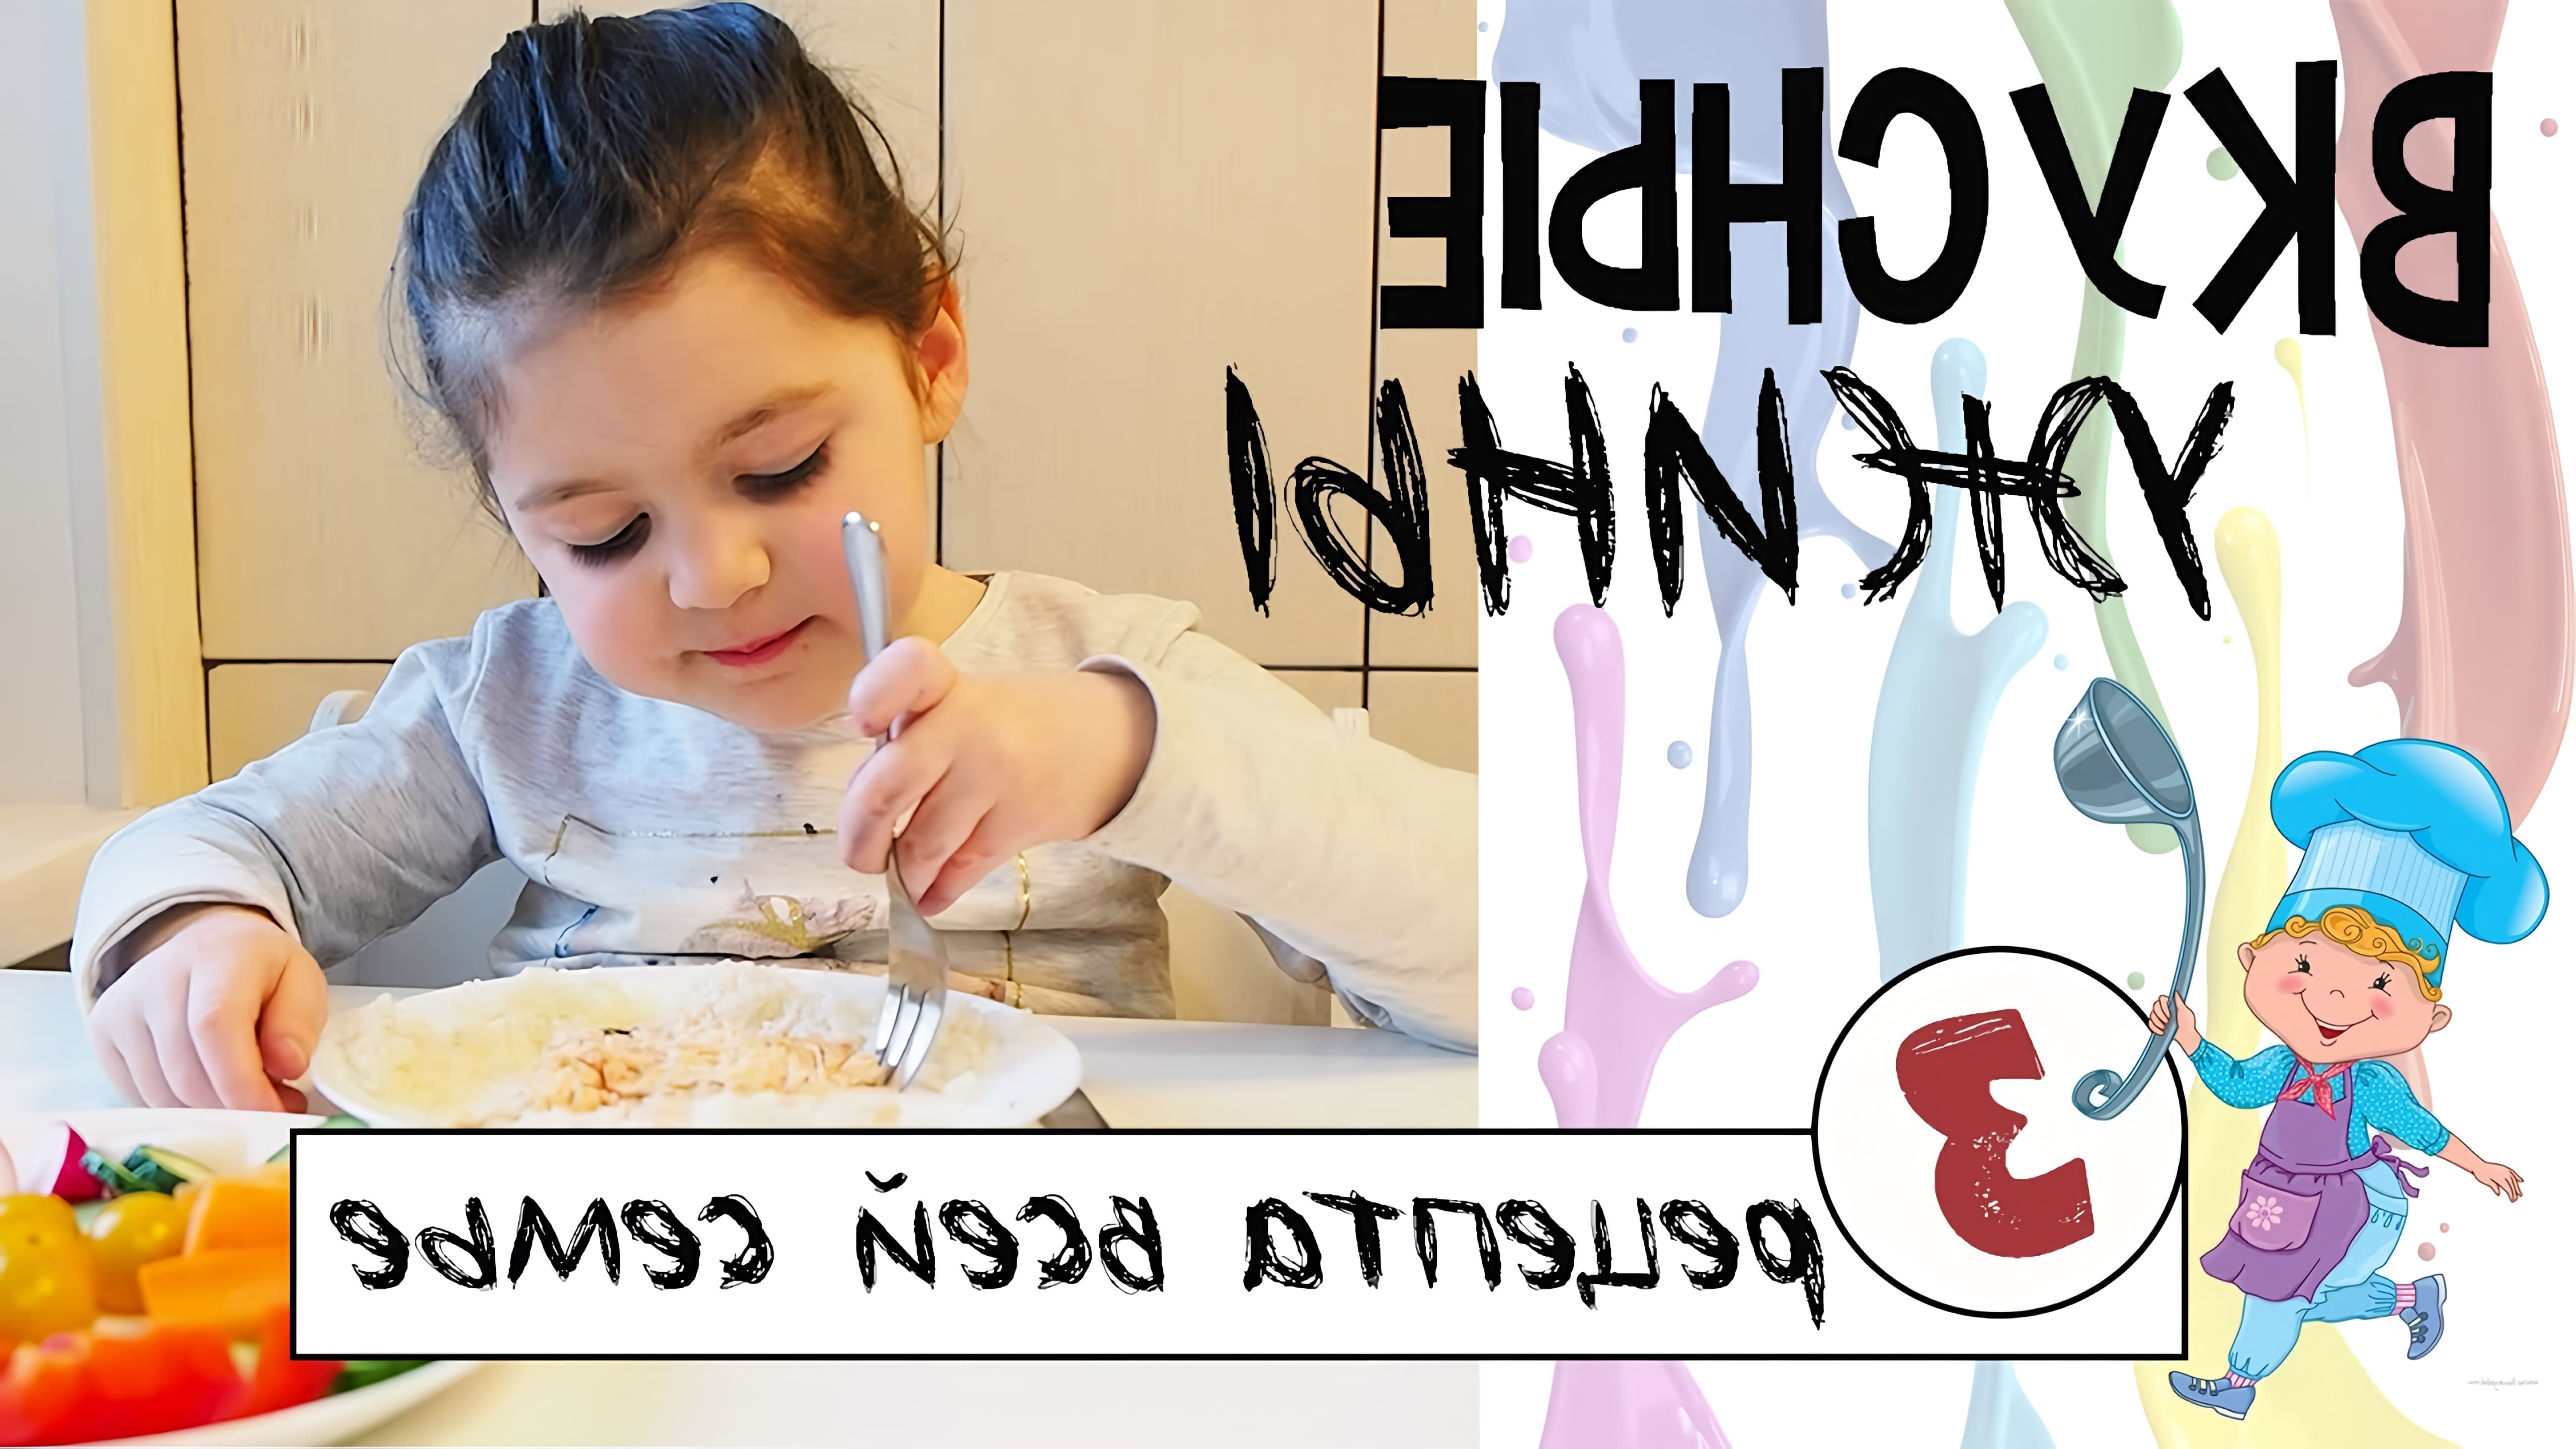 В этом видео Юлия, мама четырехлетней девочки, делится рецептами вкусных и полезных ужинов для всей семьи